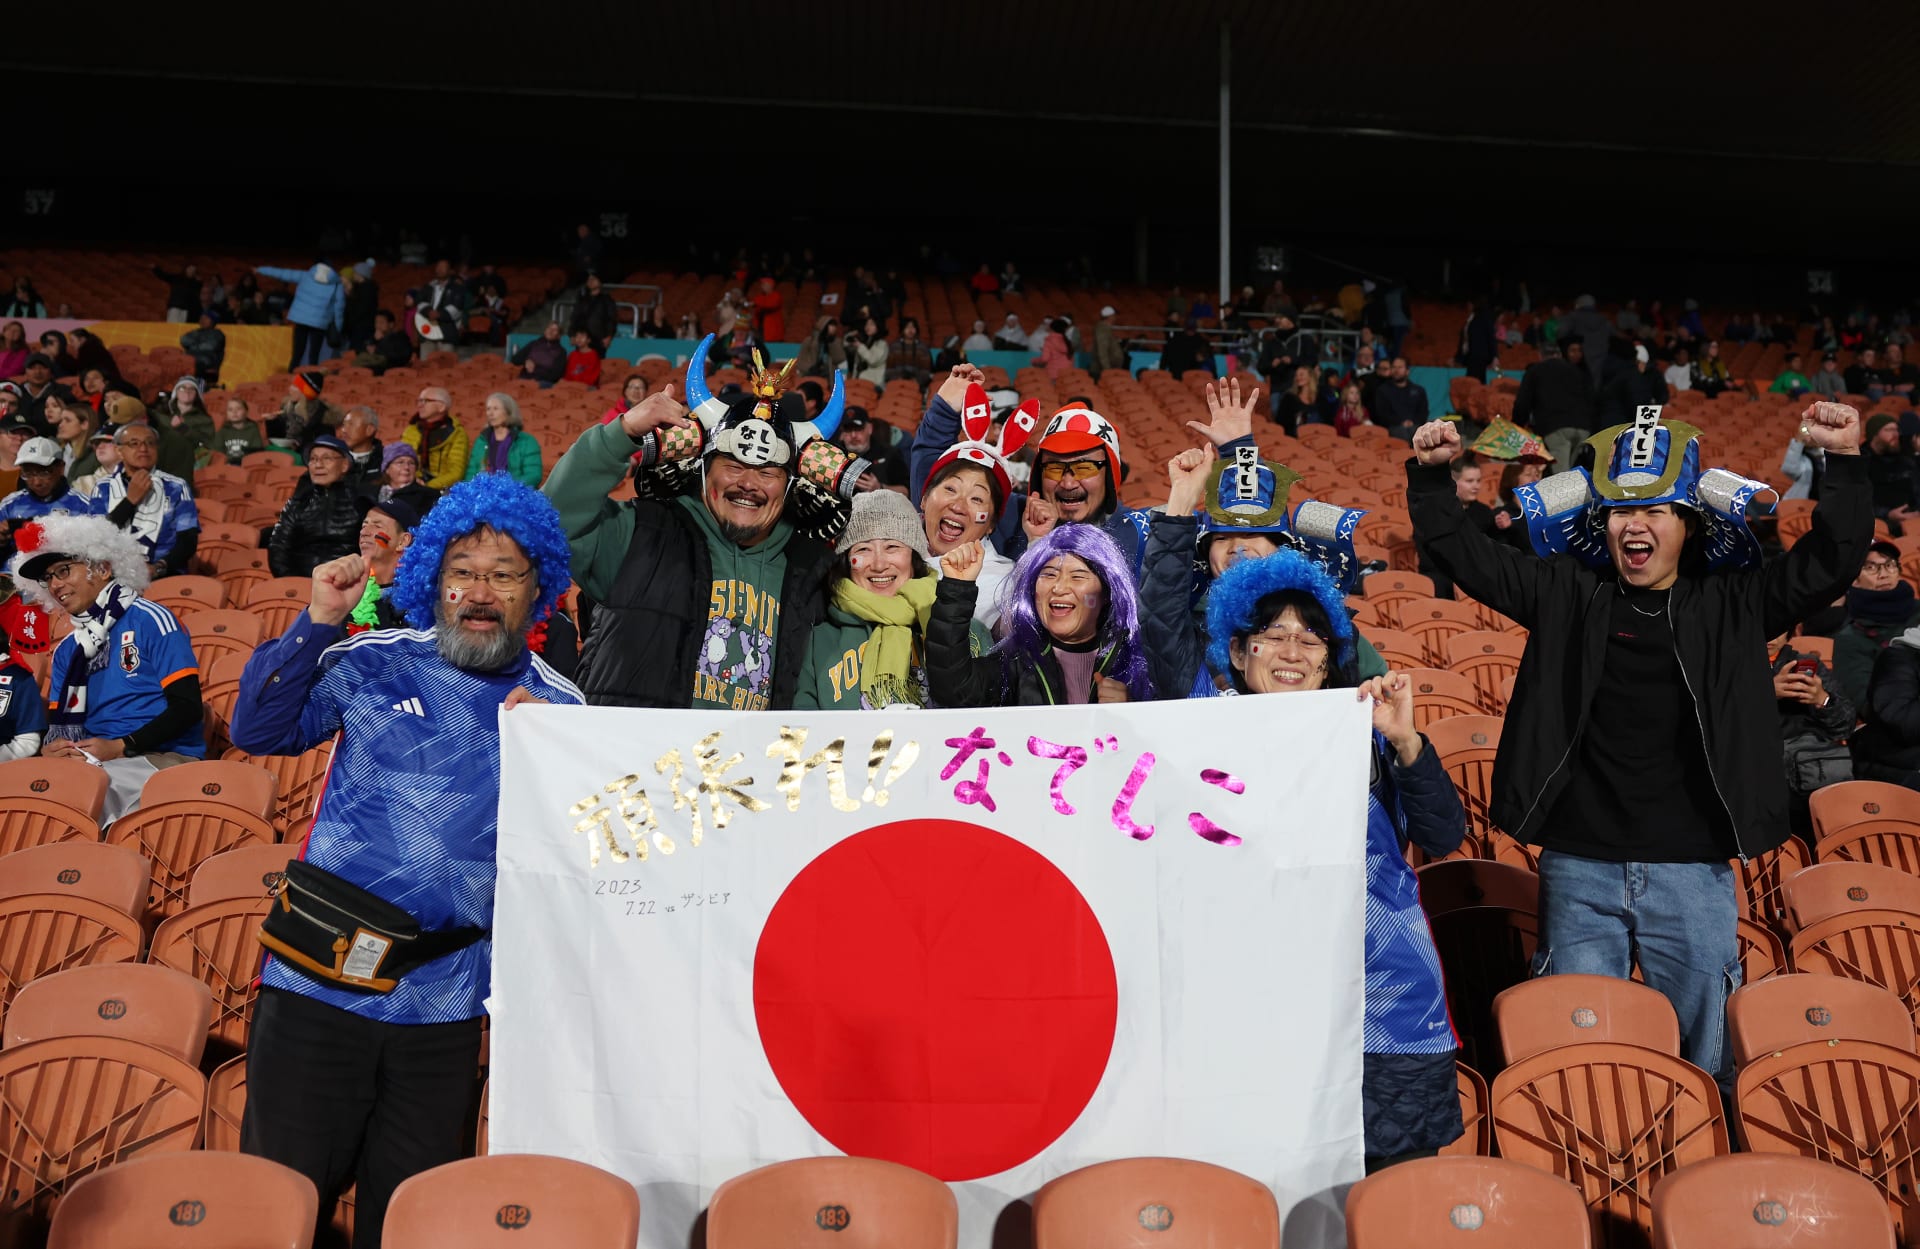 جماهير منتخب اليابان تخطف الأنظار مجدداً في أكبر بطولات العالم.. ماذا فعلت؟